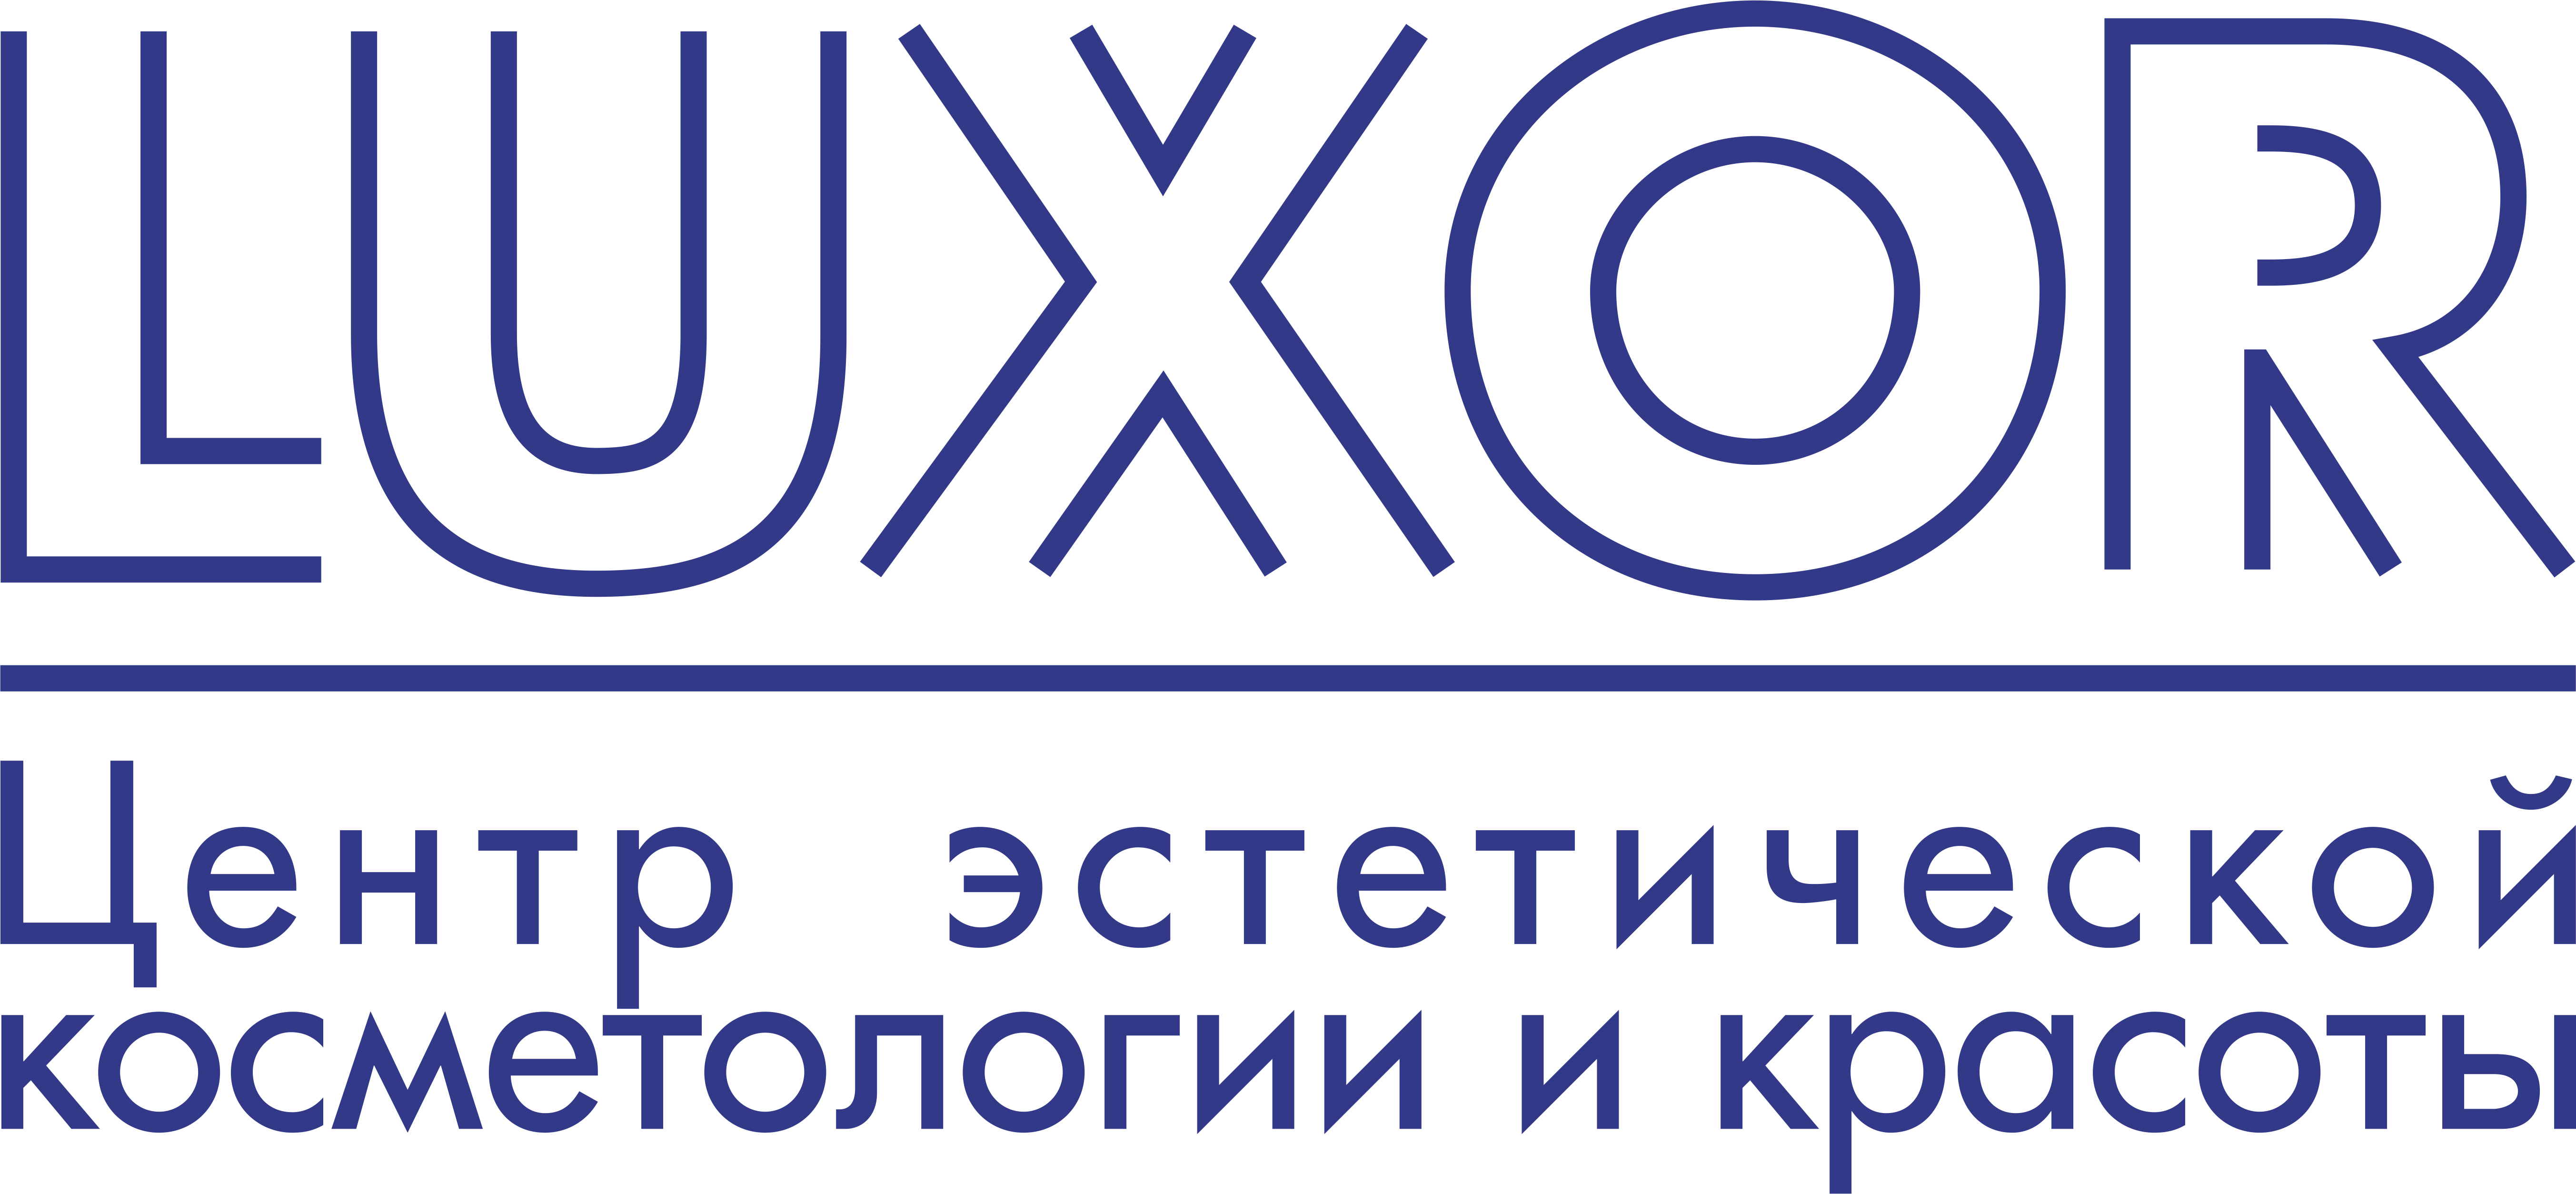 Центр Эстетической косметологии LUXOR